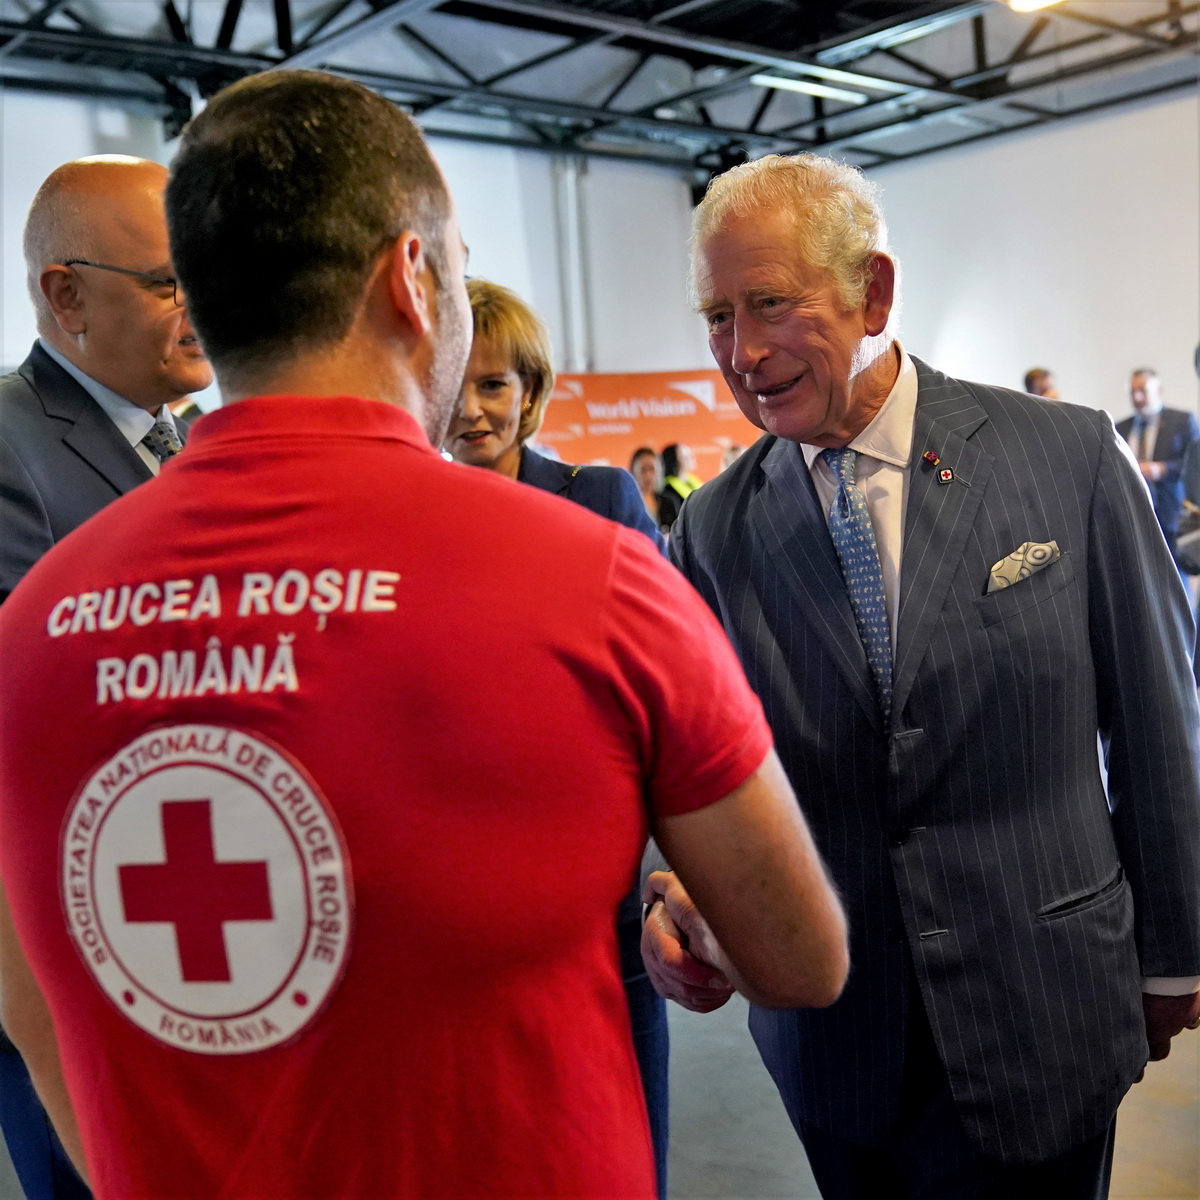 Принц Чарльз посетил центр для украинских беженцев в Румынии